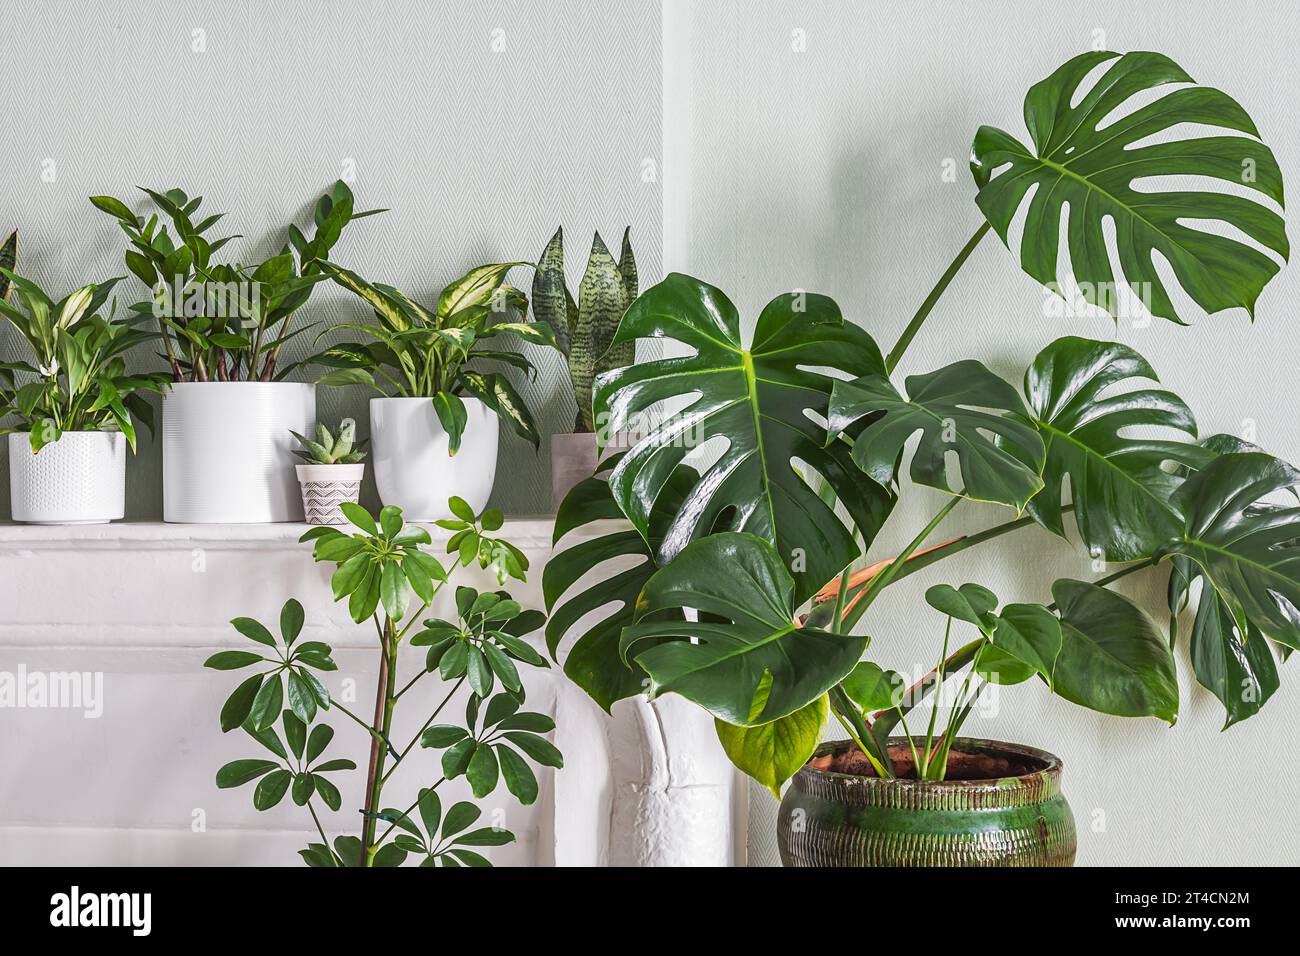 Plantes d'intérieur variete - monstera, zz plante, schefflera dans la pièce avec des murs vert clair, concept de jardin intérieur Banque D'Images